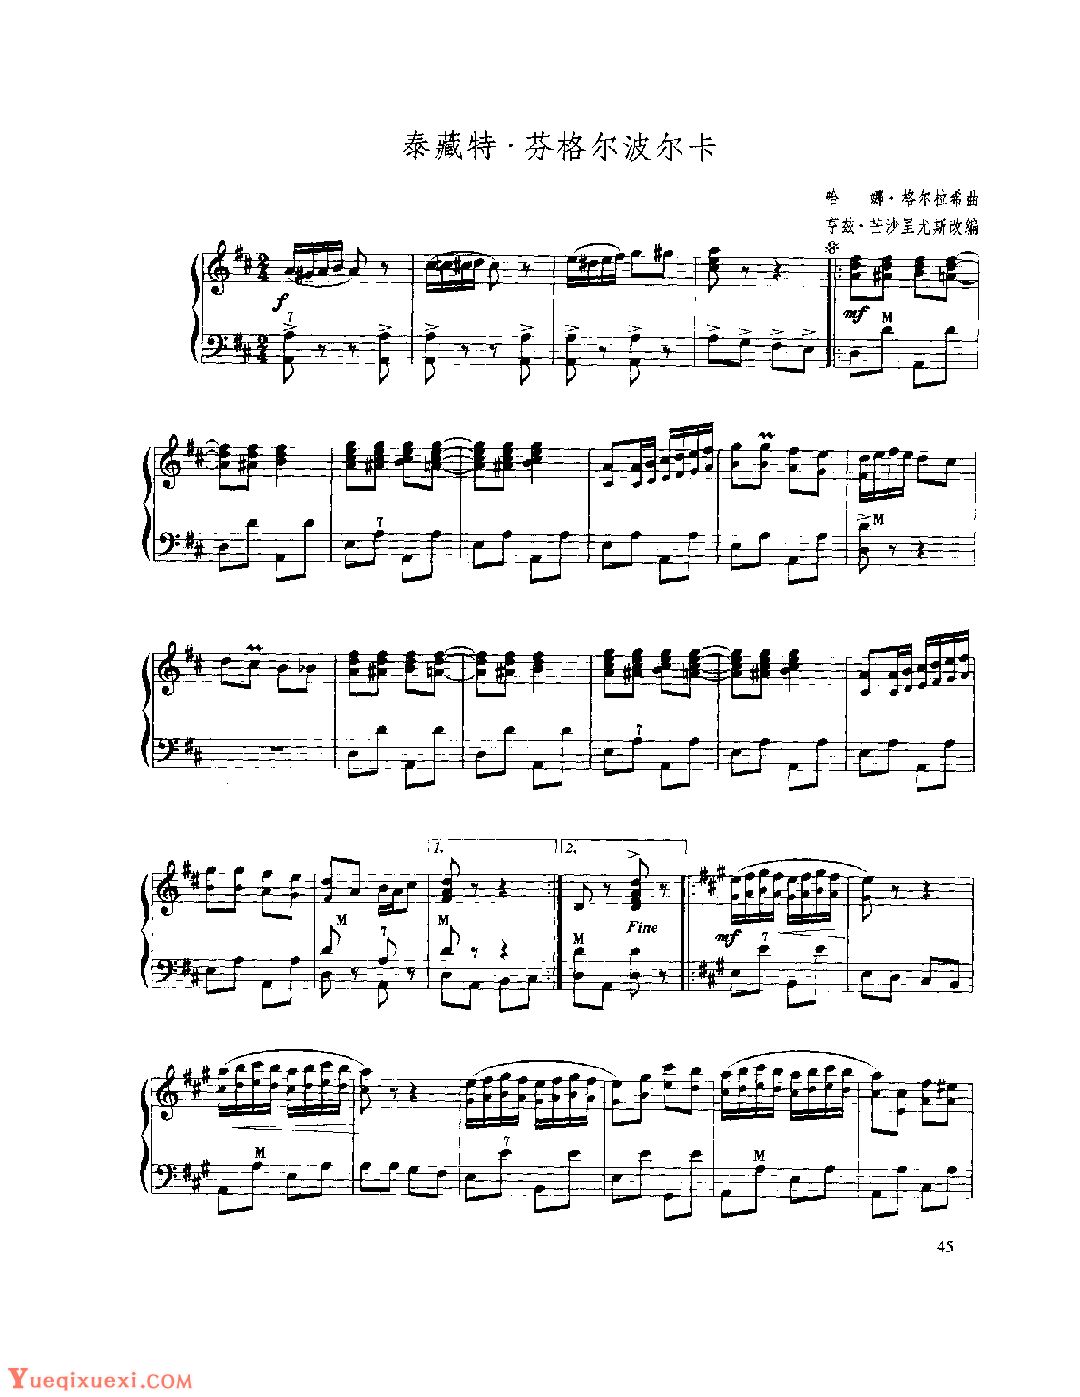 现代手风琴流行乐曲《泰藏特·芬格尔波尔卡》哈娜·格尔拉希曲